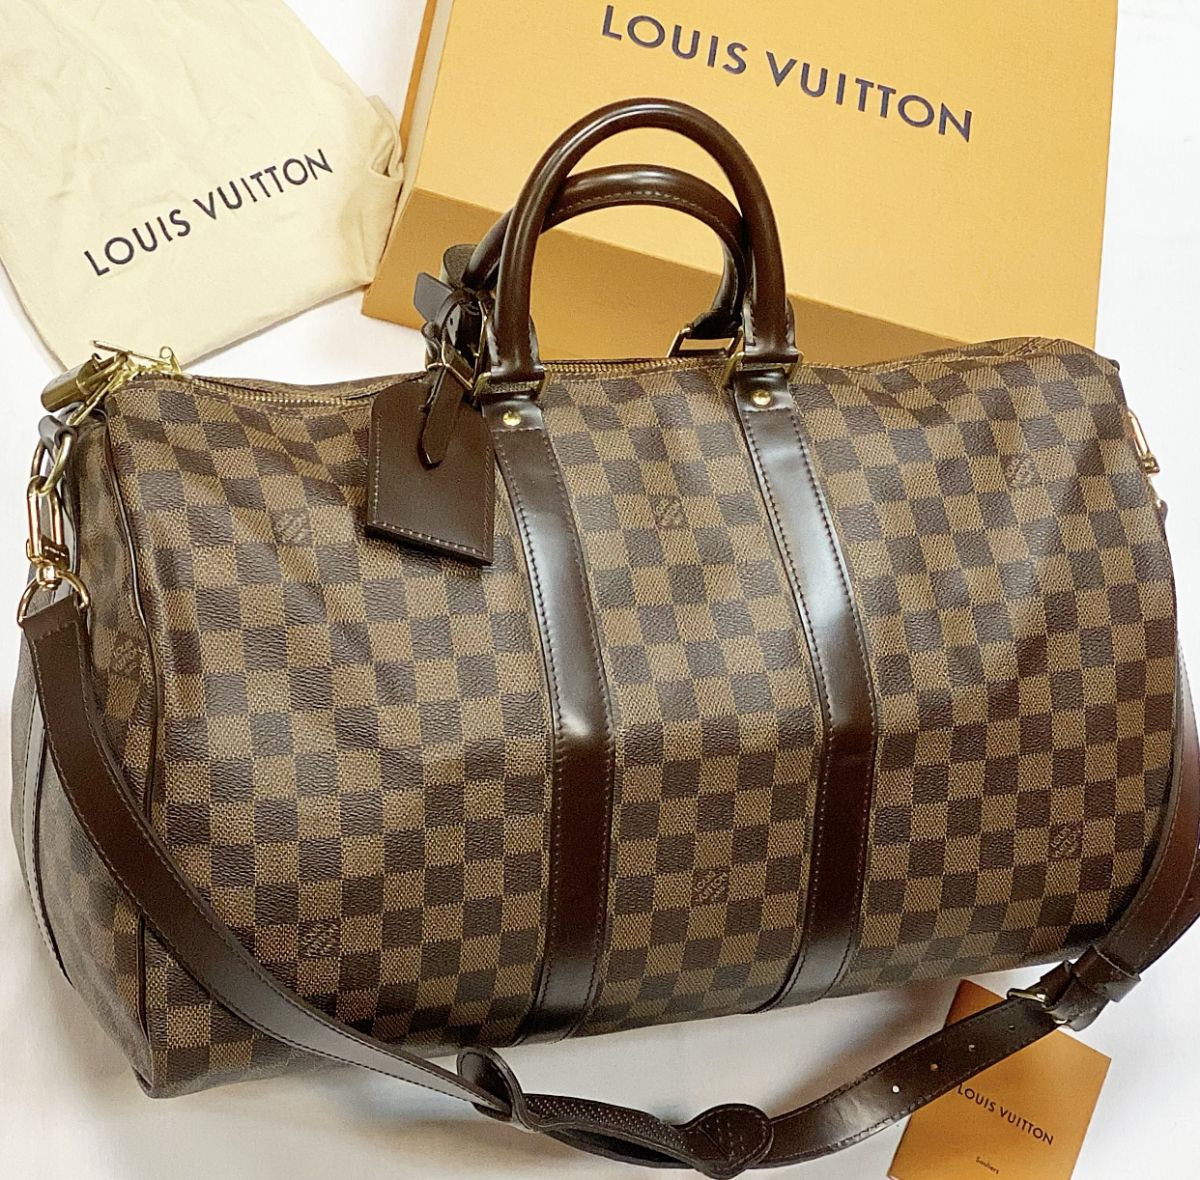 Сумка / дорожная / Louis Vuitton размер 45/30 цена 61 540 руб 